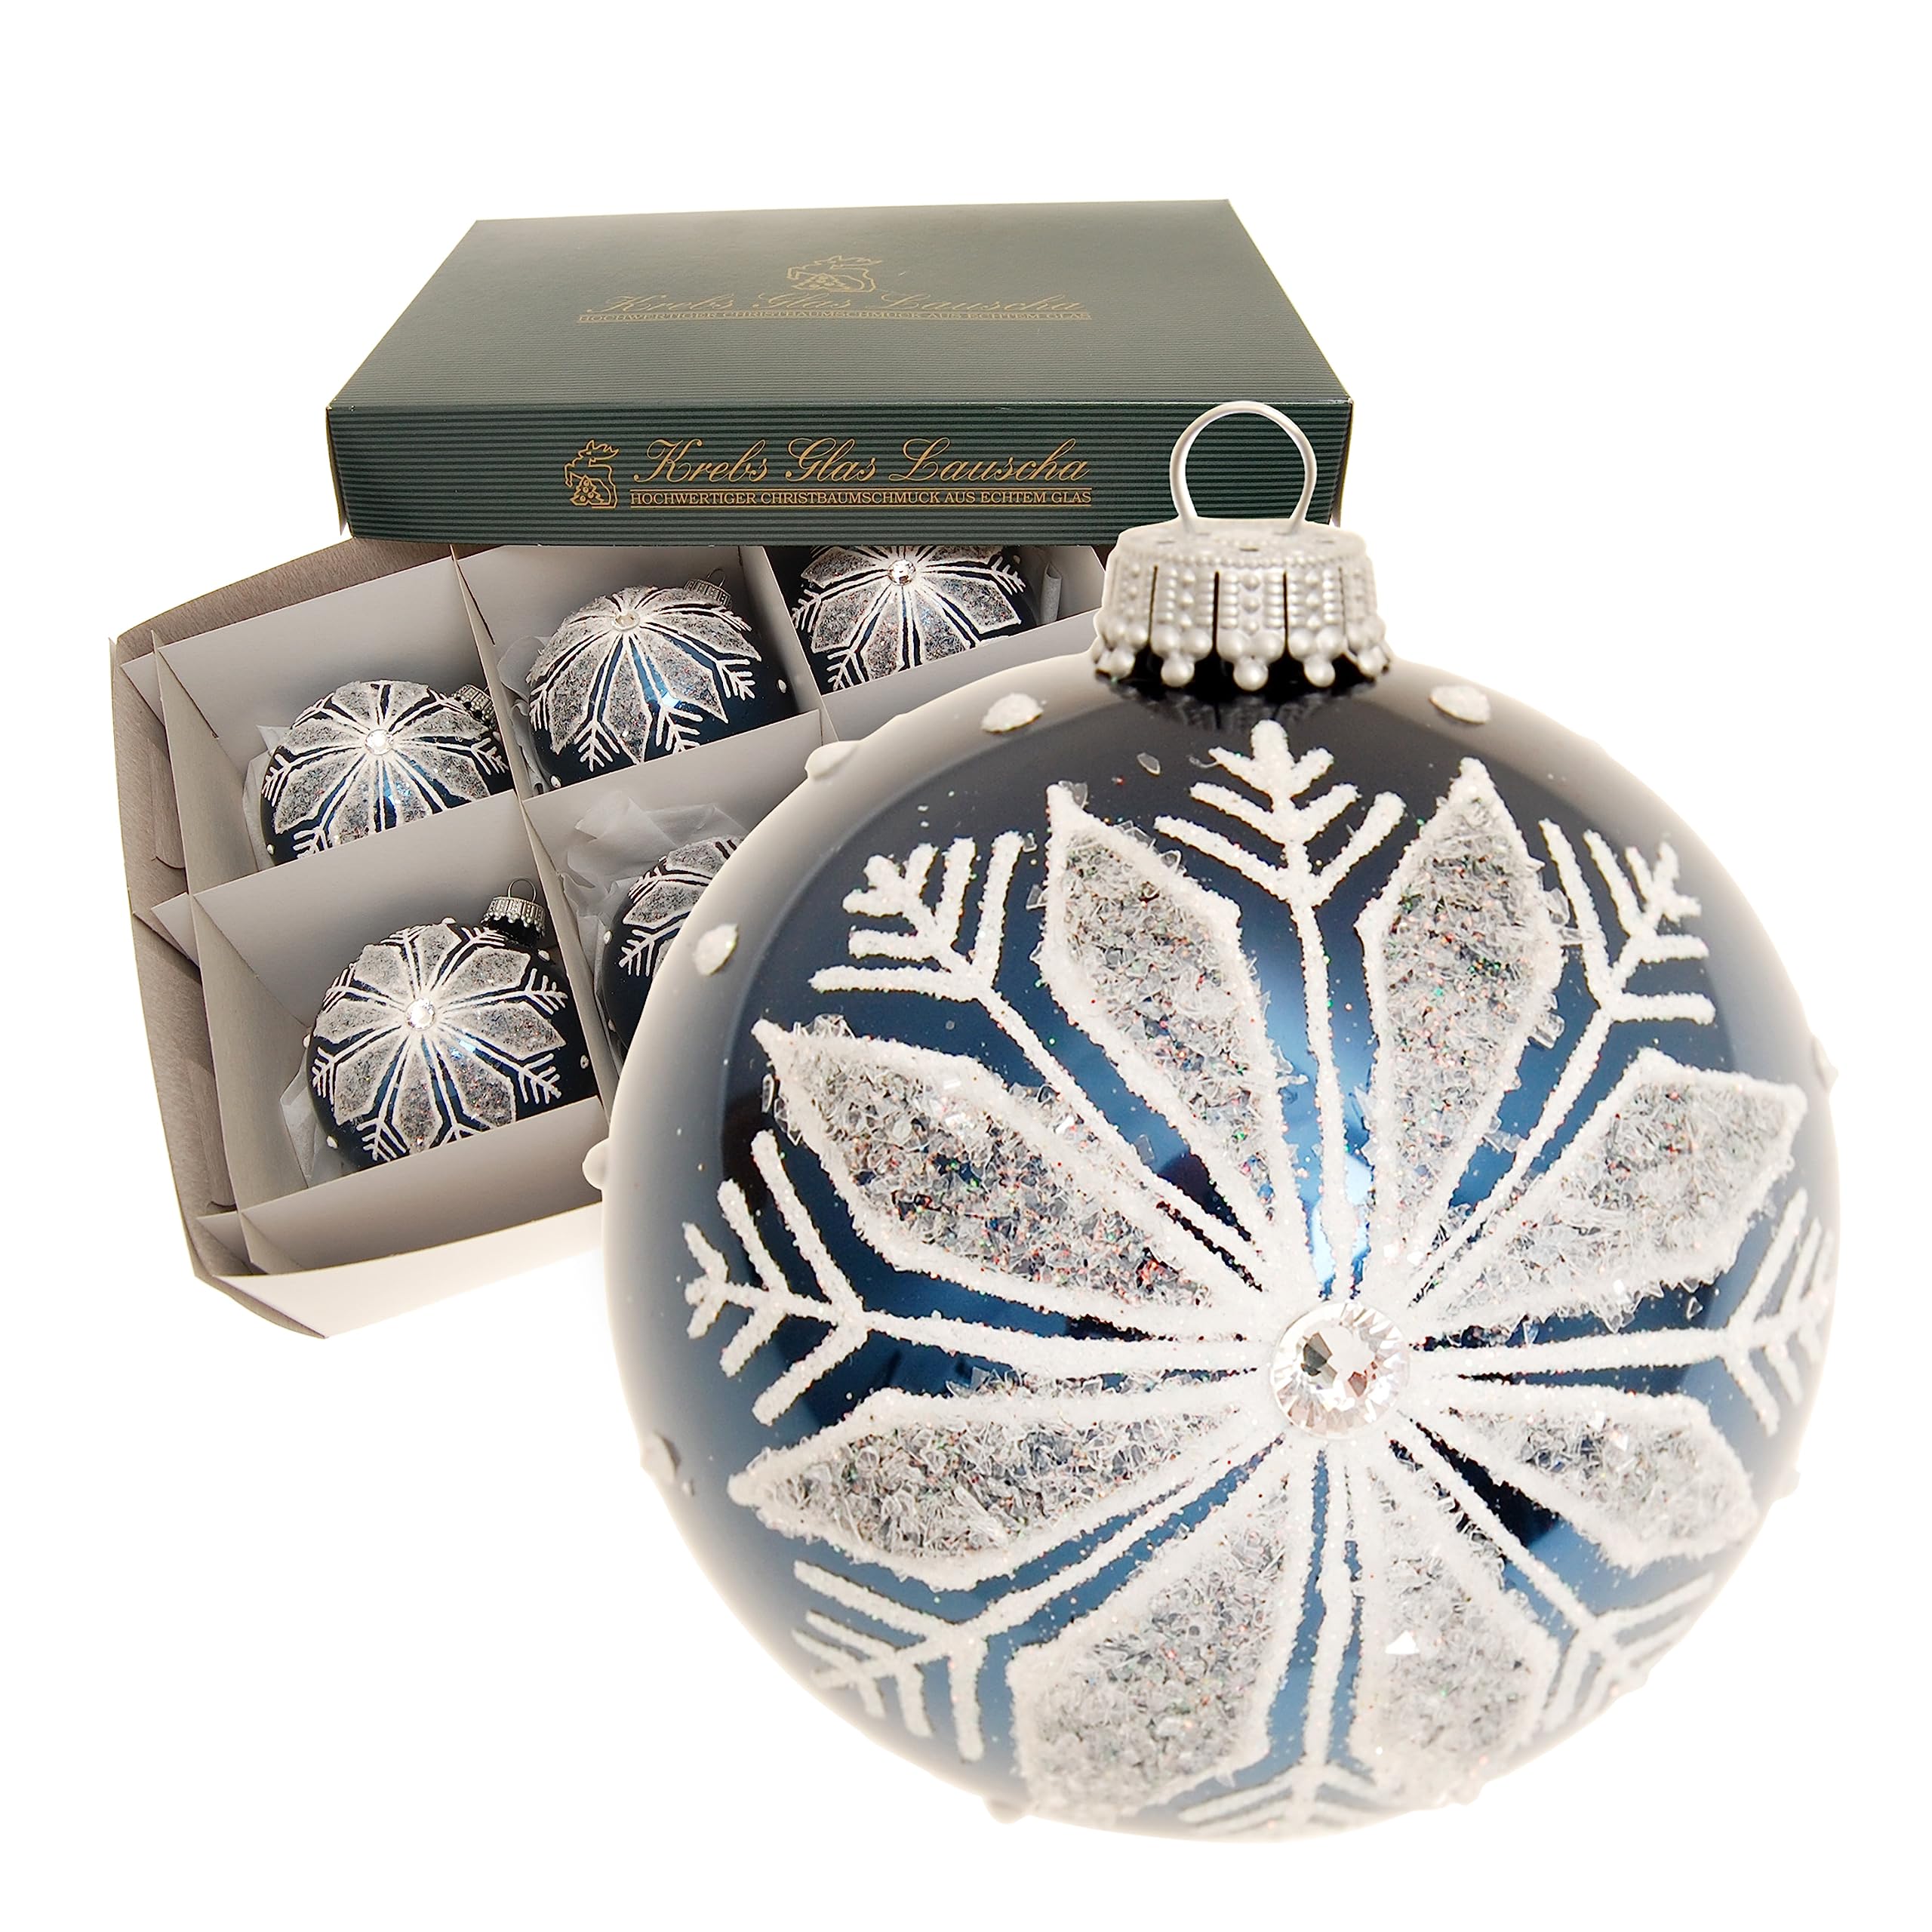 Krebs Glas Lauscha - Weihnachtsdekoration/Christbaumschmuck aus Glas - Weihnachtskugeln - Motiv: Kobaltblau-glänzend mit Schneeflocke - Größe: 6 mal 8cm